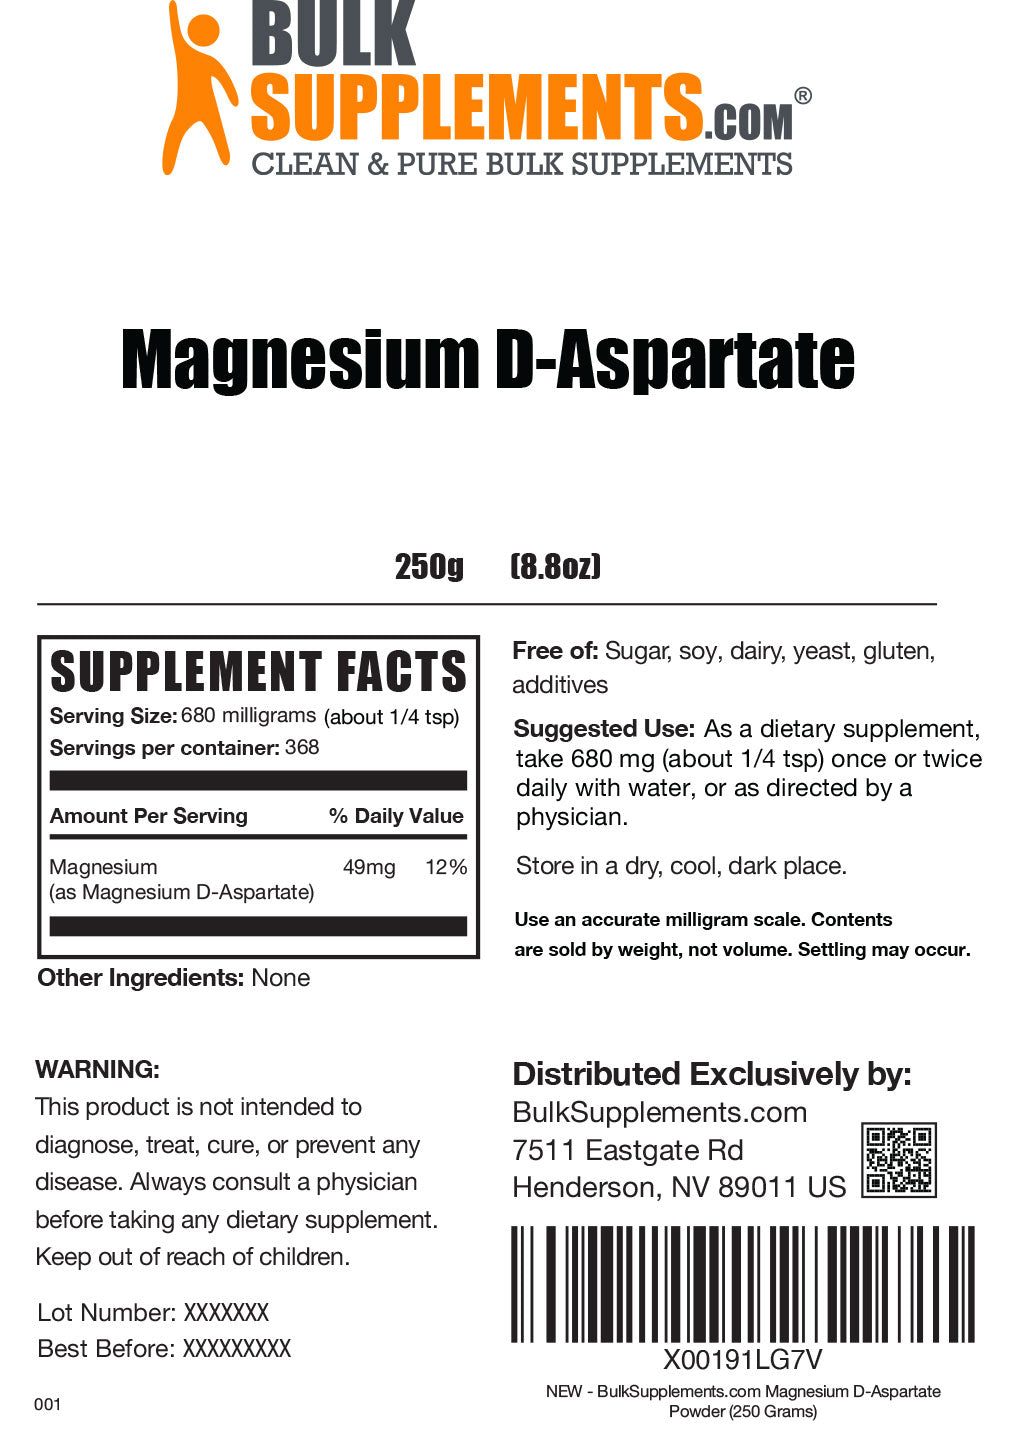 Magnesium D-Aspartate powder label 250g